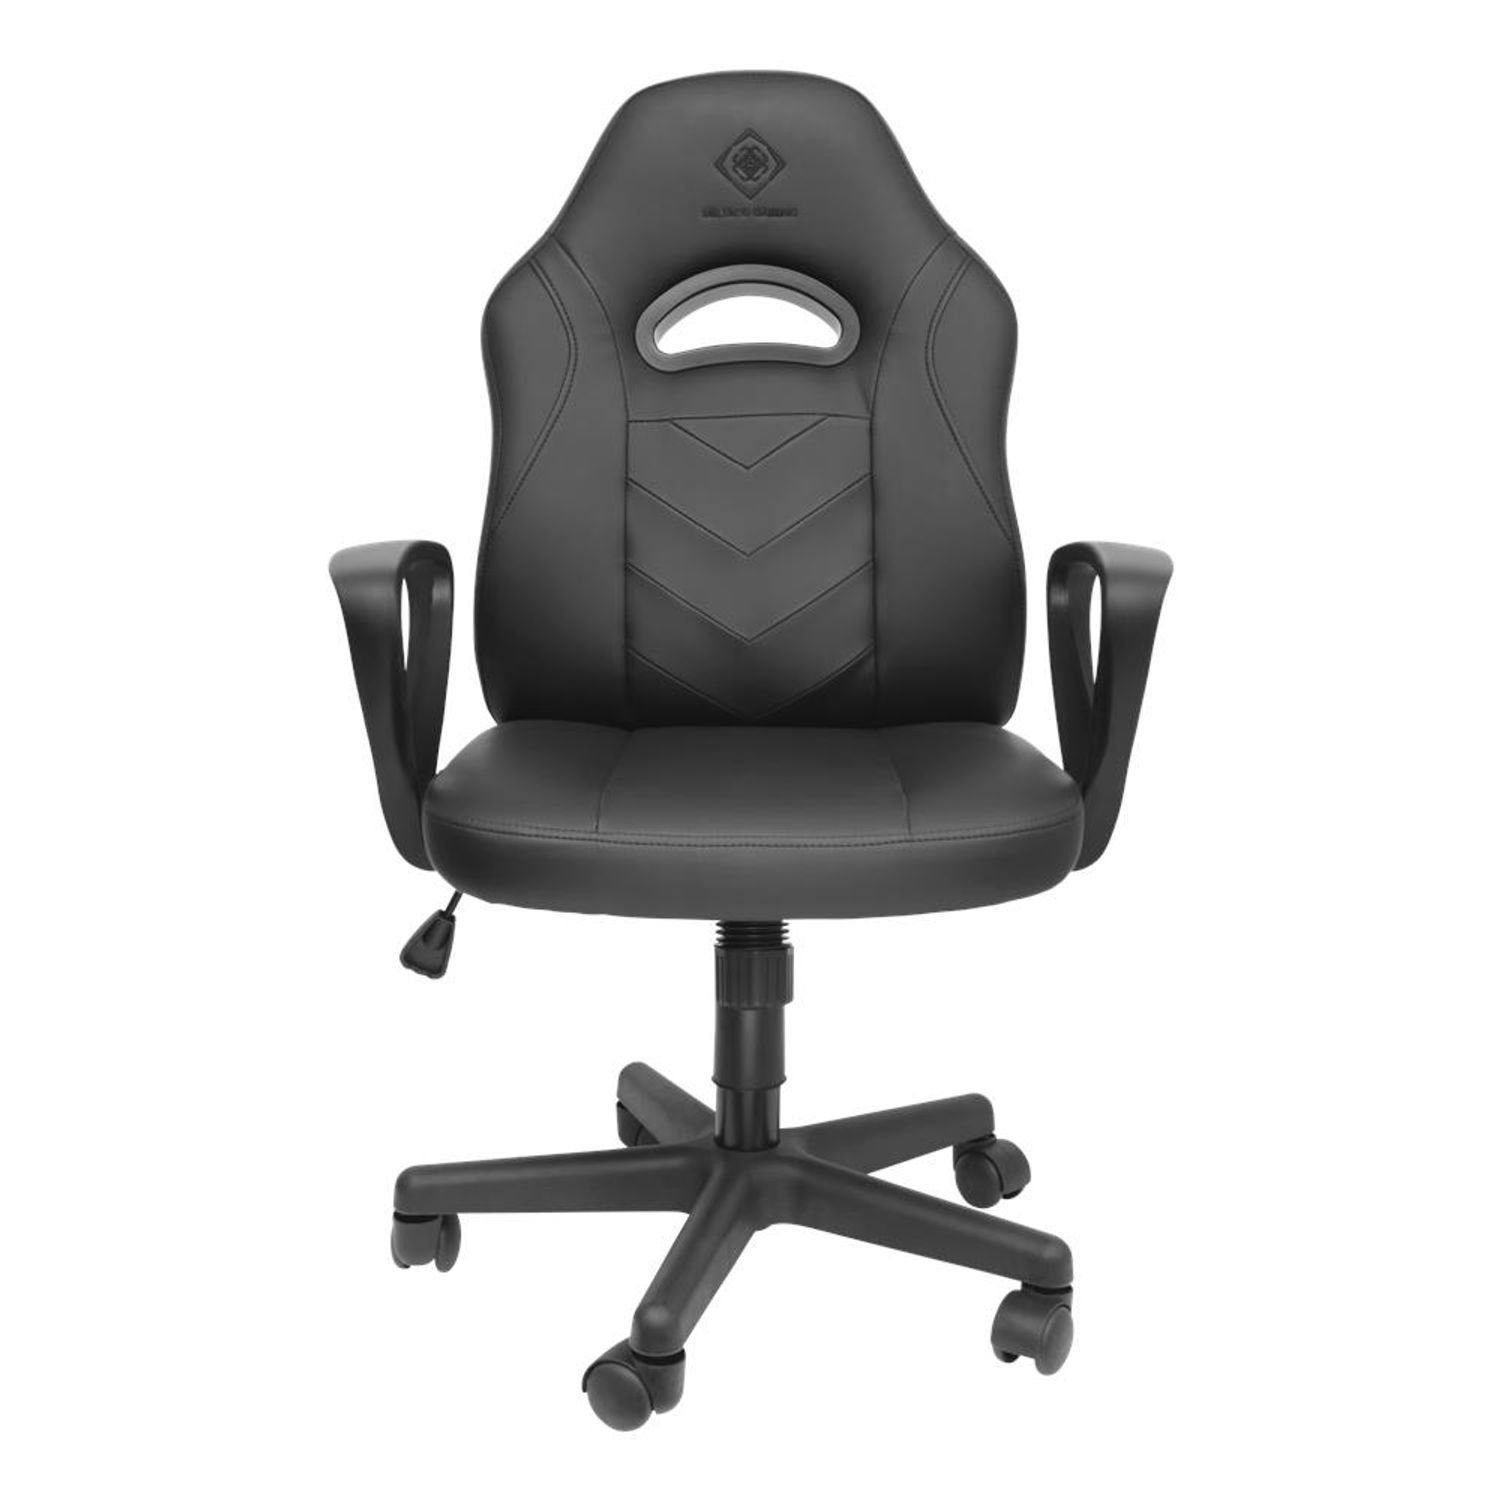 Herstellergarantie 5 Gaming Sitzen bequem nach inkl. langem schwarz DC110 extra klein (kein DELTACO Gaming-Stuhl selbst Jahre Set), Stuhl